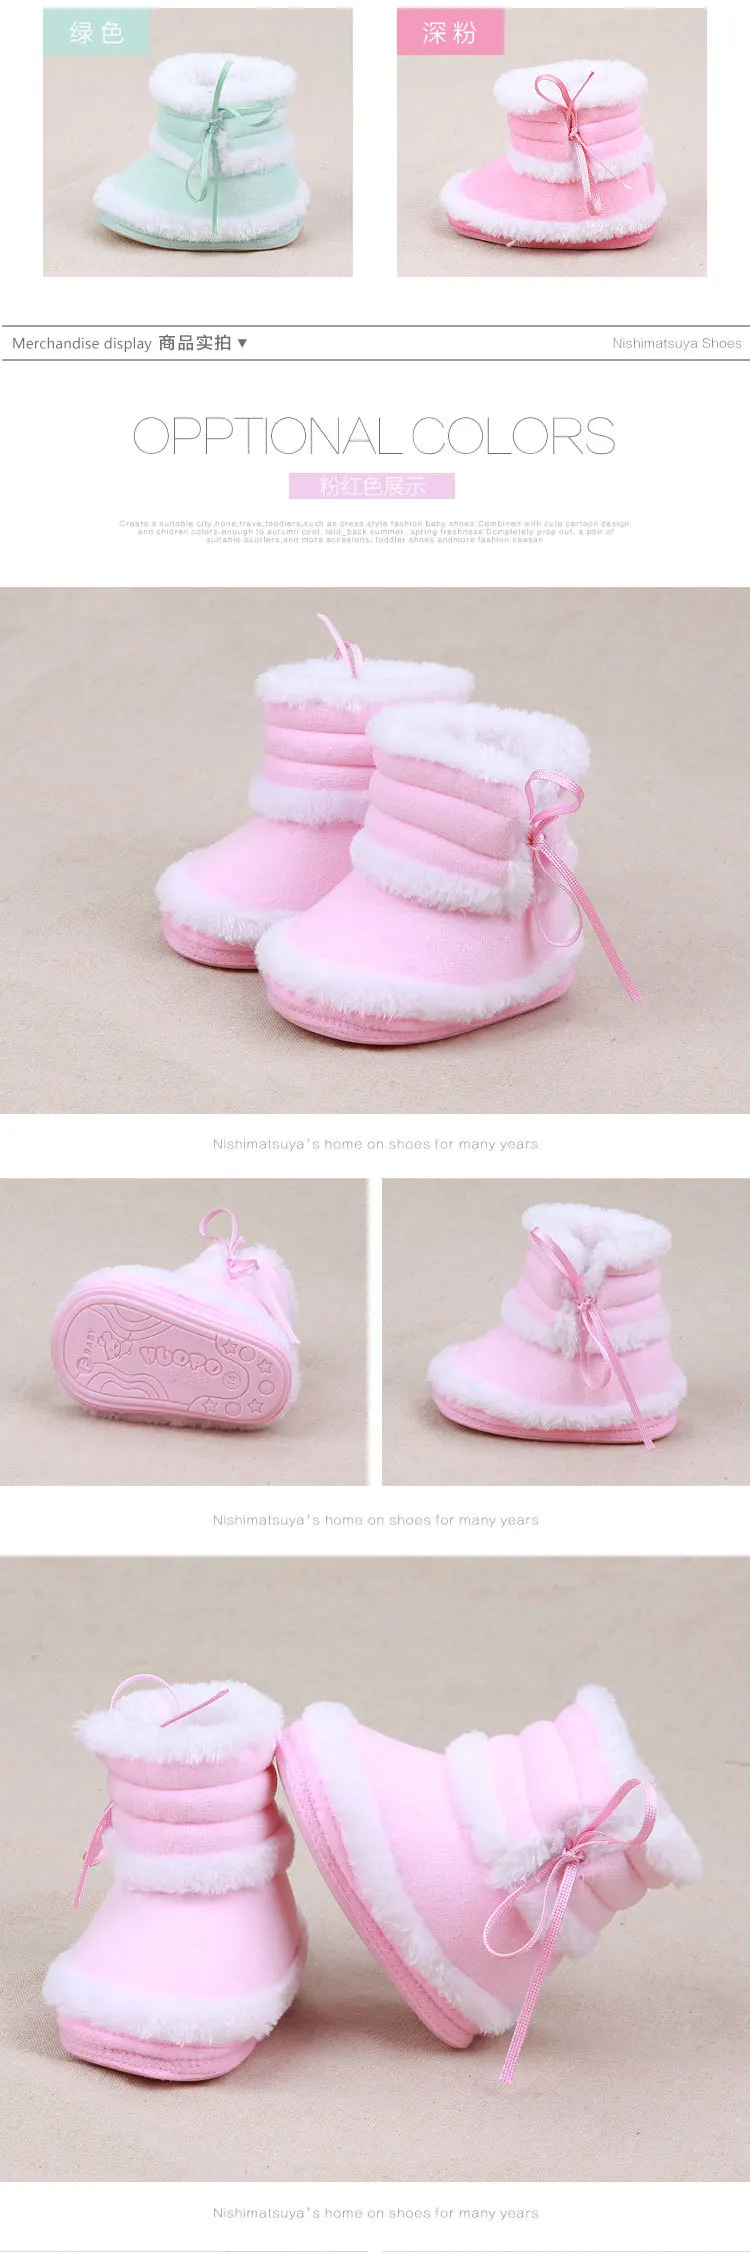 От 0 до 1 года детская обувь для зимы, детские ботинки, бархатная детская обувь, мягкая резиновая подошва, зимние ботинки для малышей